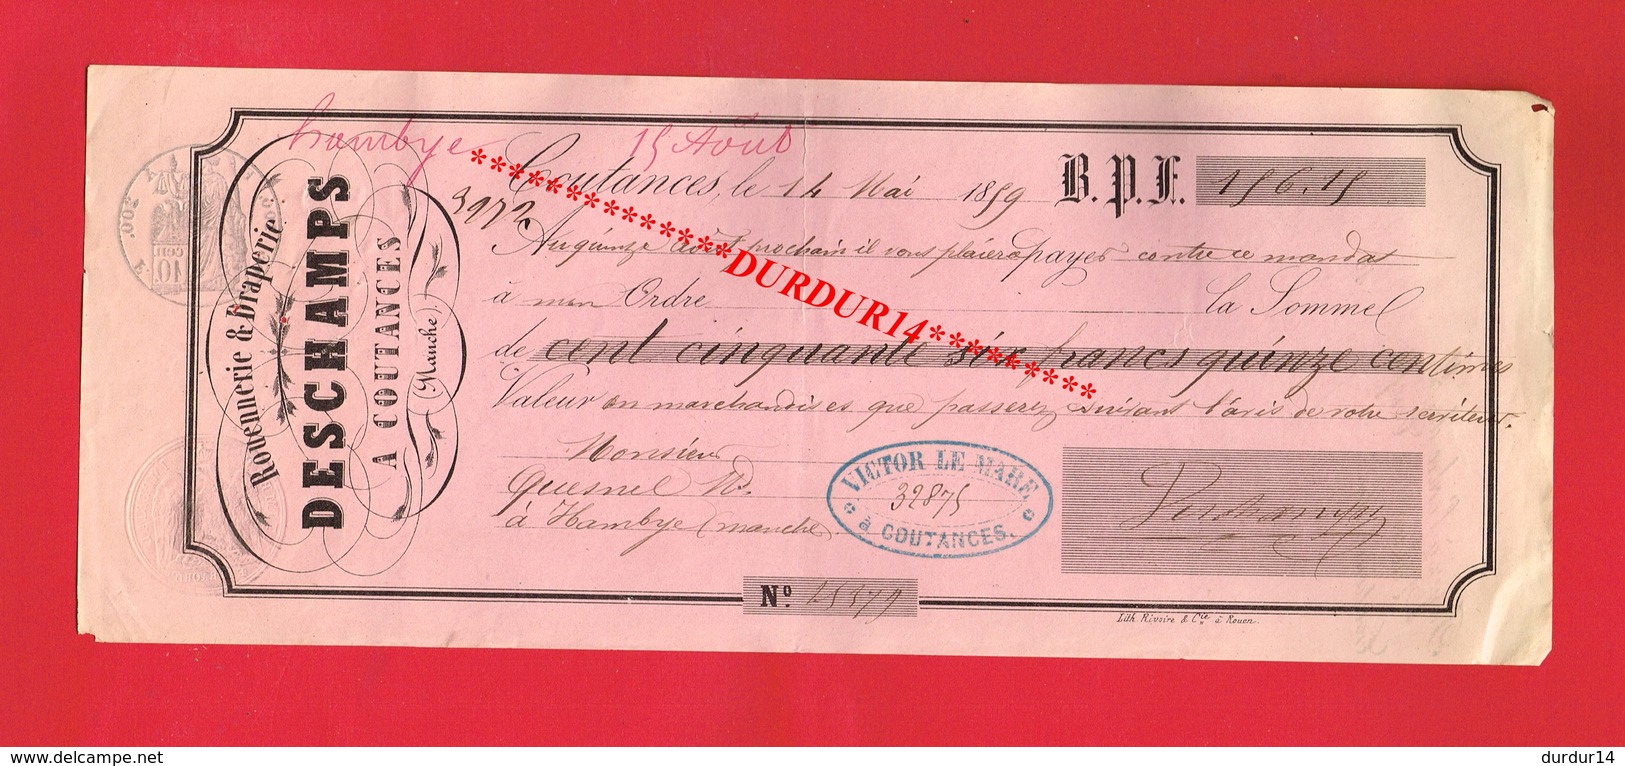 1 Lettre De Change & COUTANCES DESCHAMPS Rouennerie Draperie 1859 - Lettres De Change